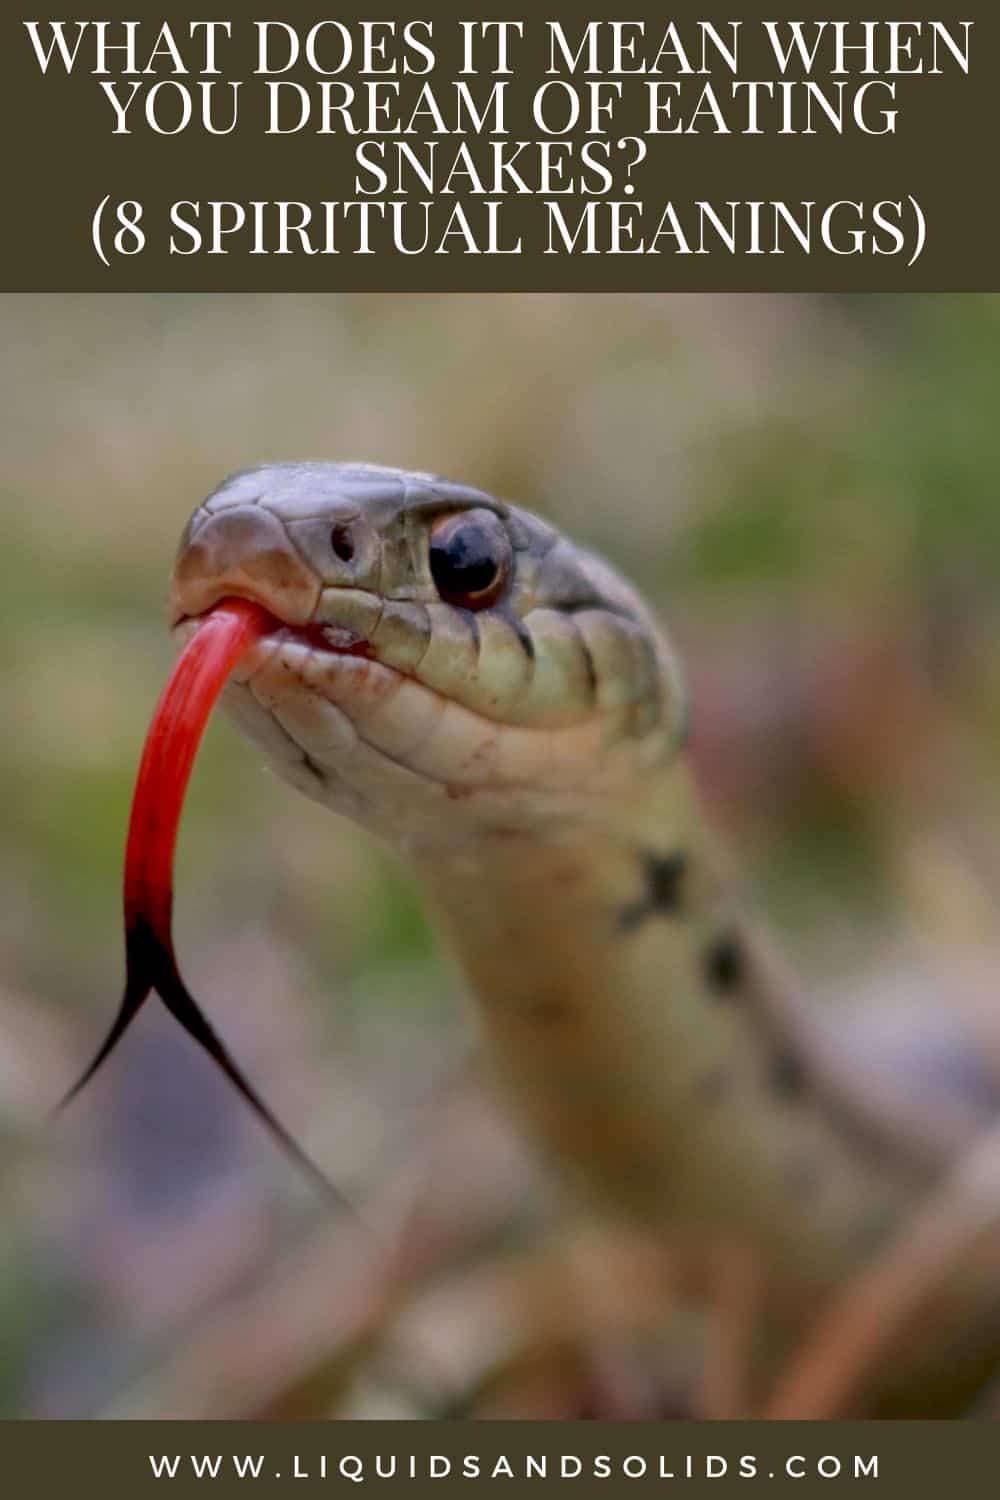  Que significa cando soñas con comer serpes? (8 significados espirituais)